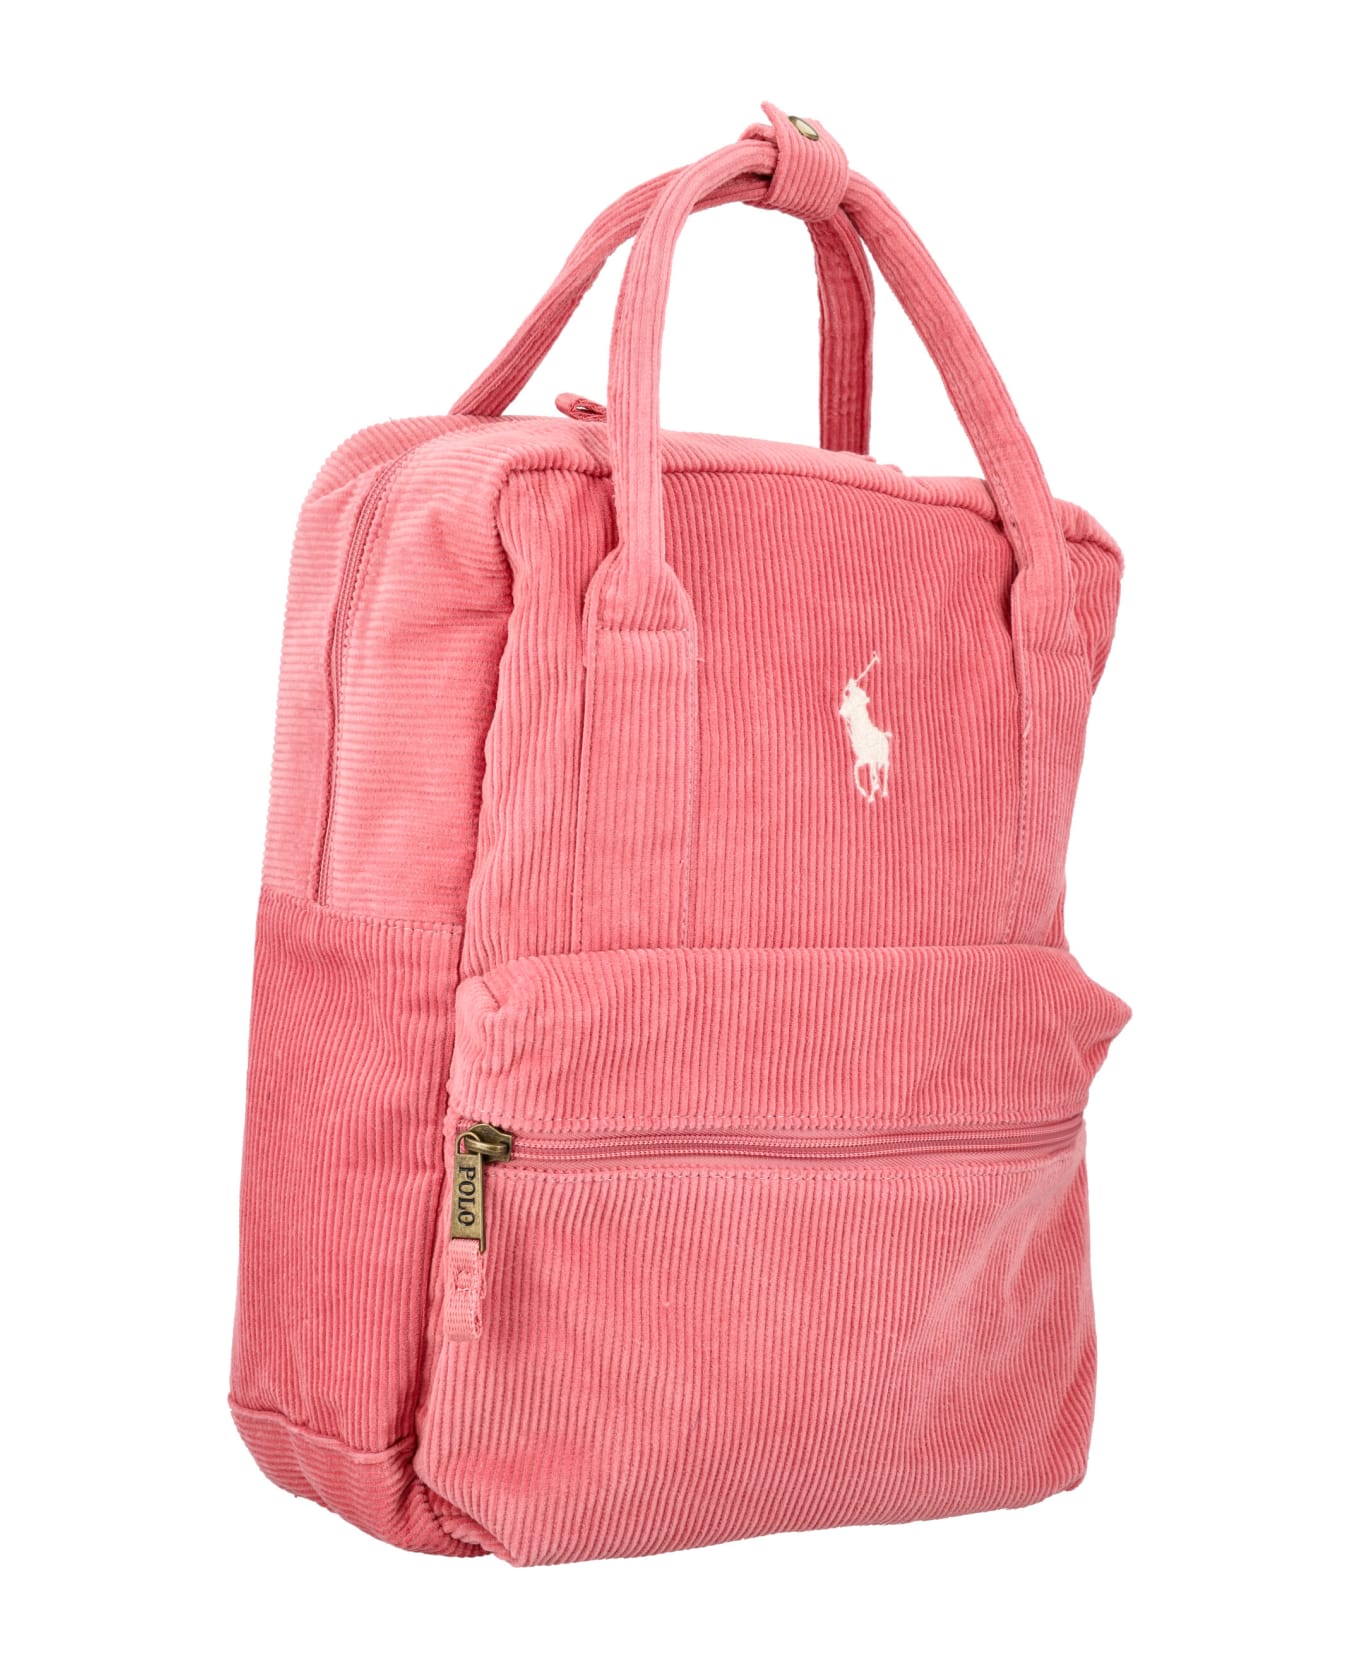 Polo Ralph Lauren Big Pony Corduroy Backpack - PINK